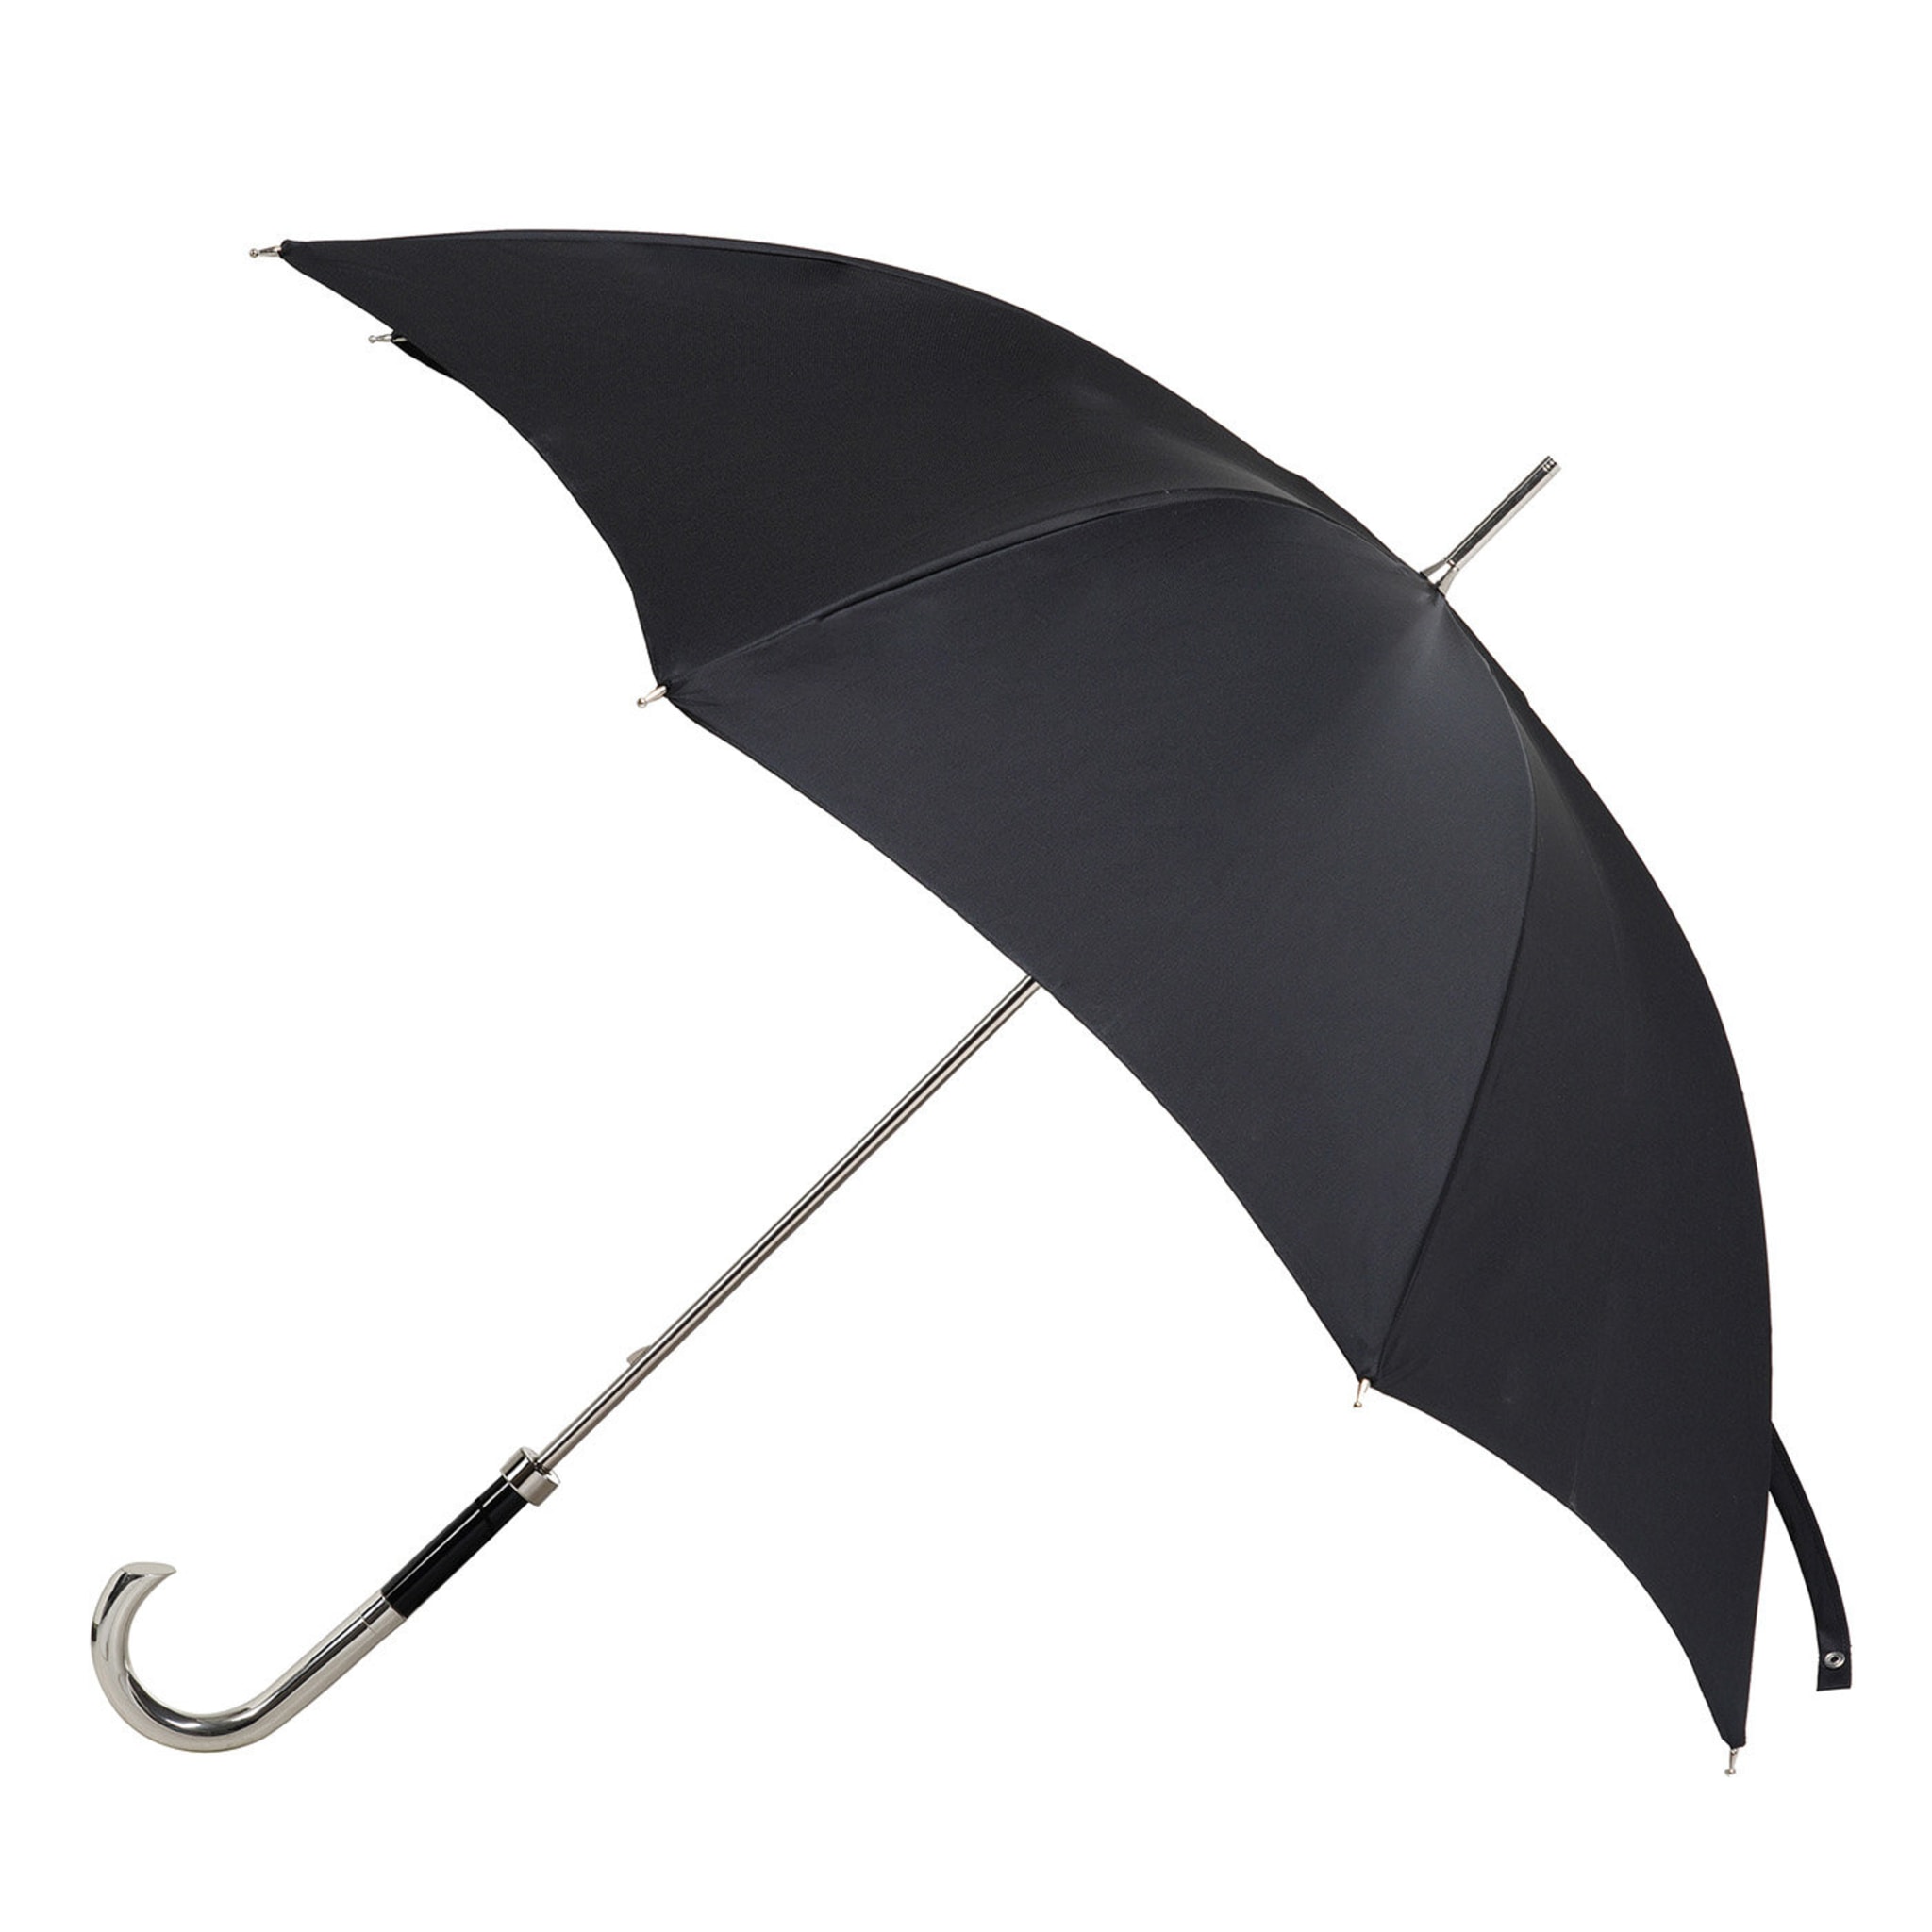 Schwarz/silber und blau gestreifter Regenschirm - Hauptansicht